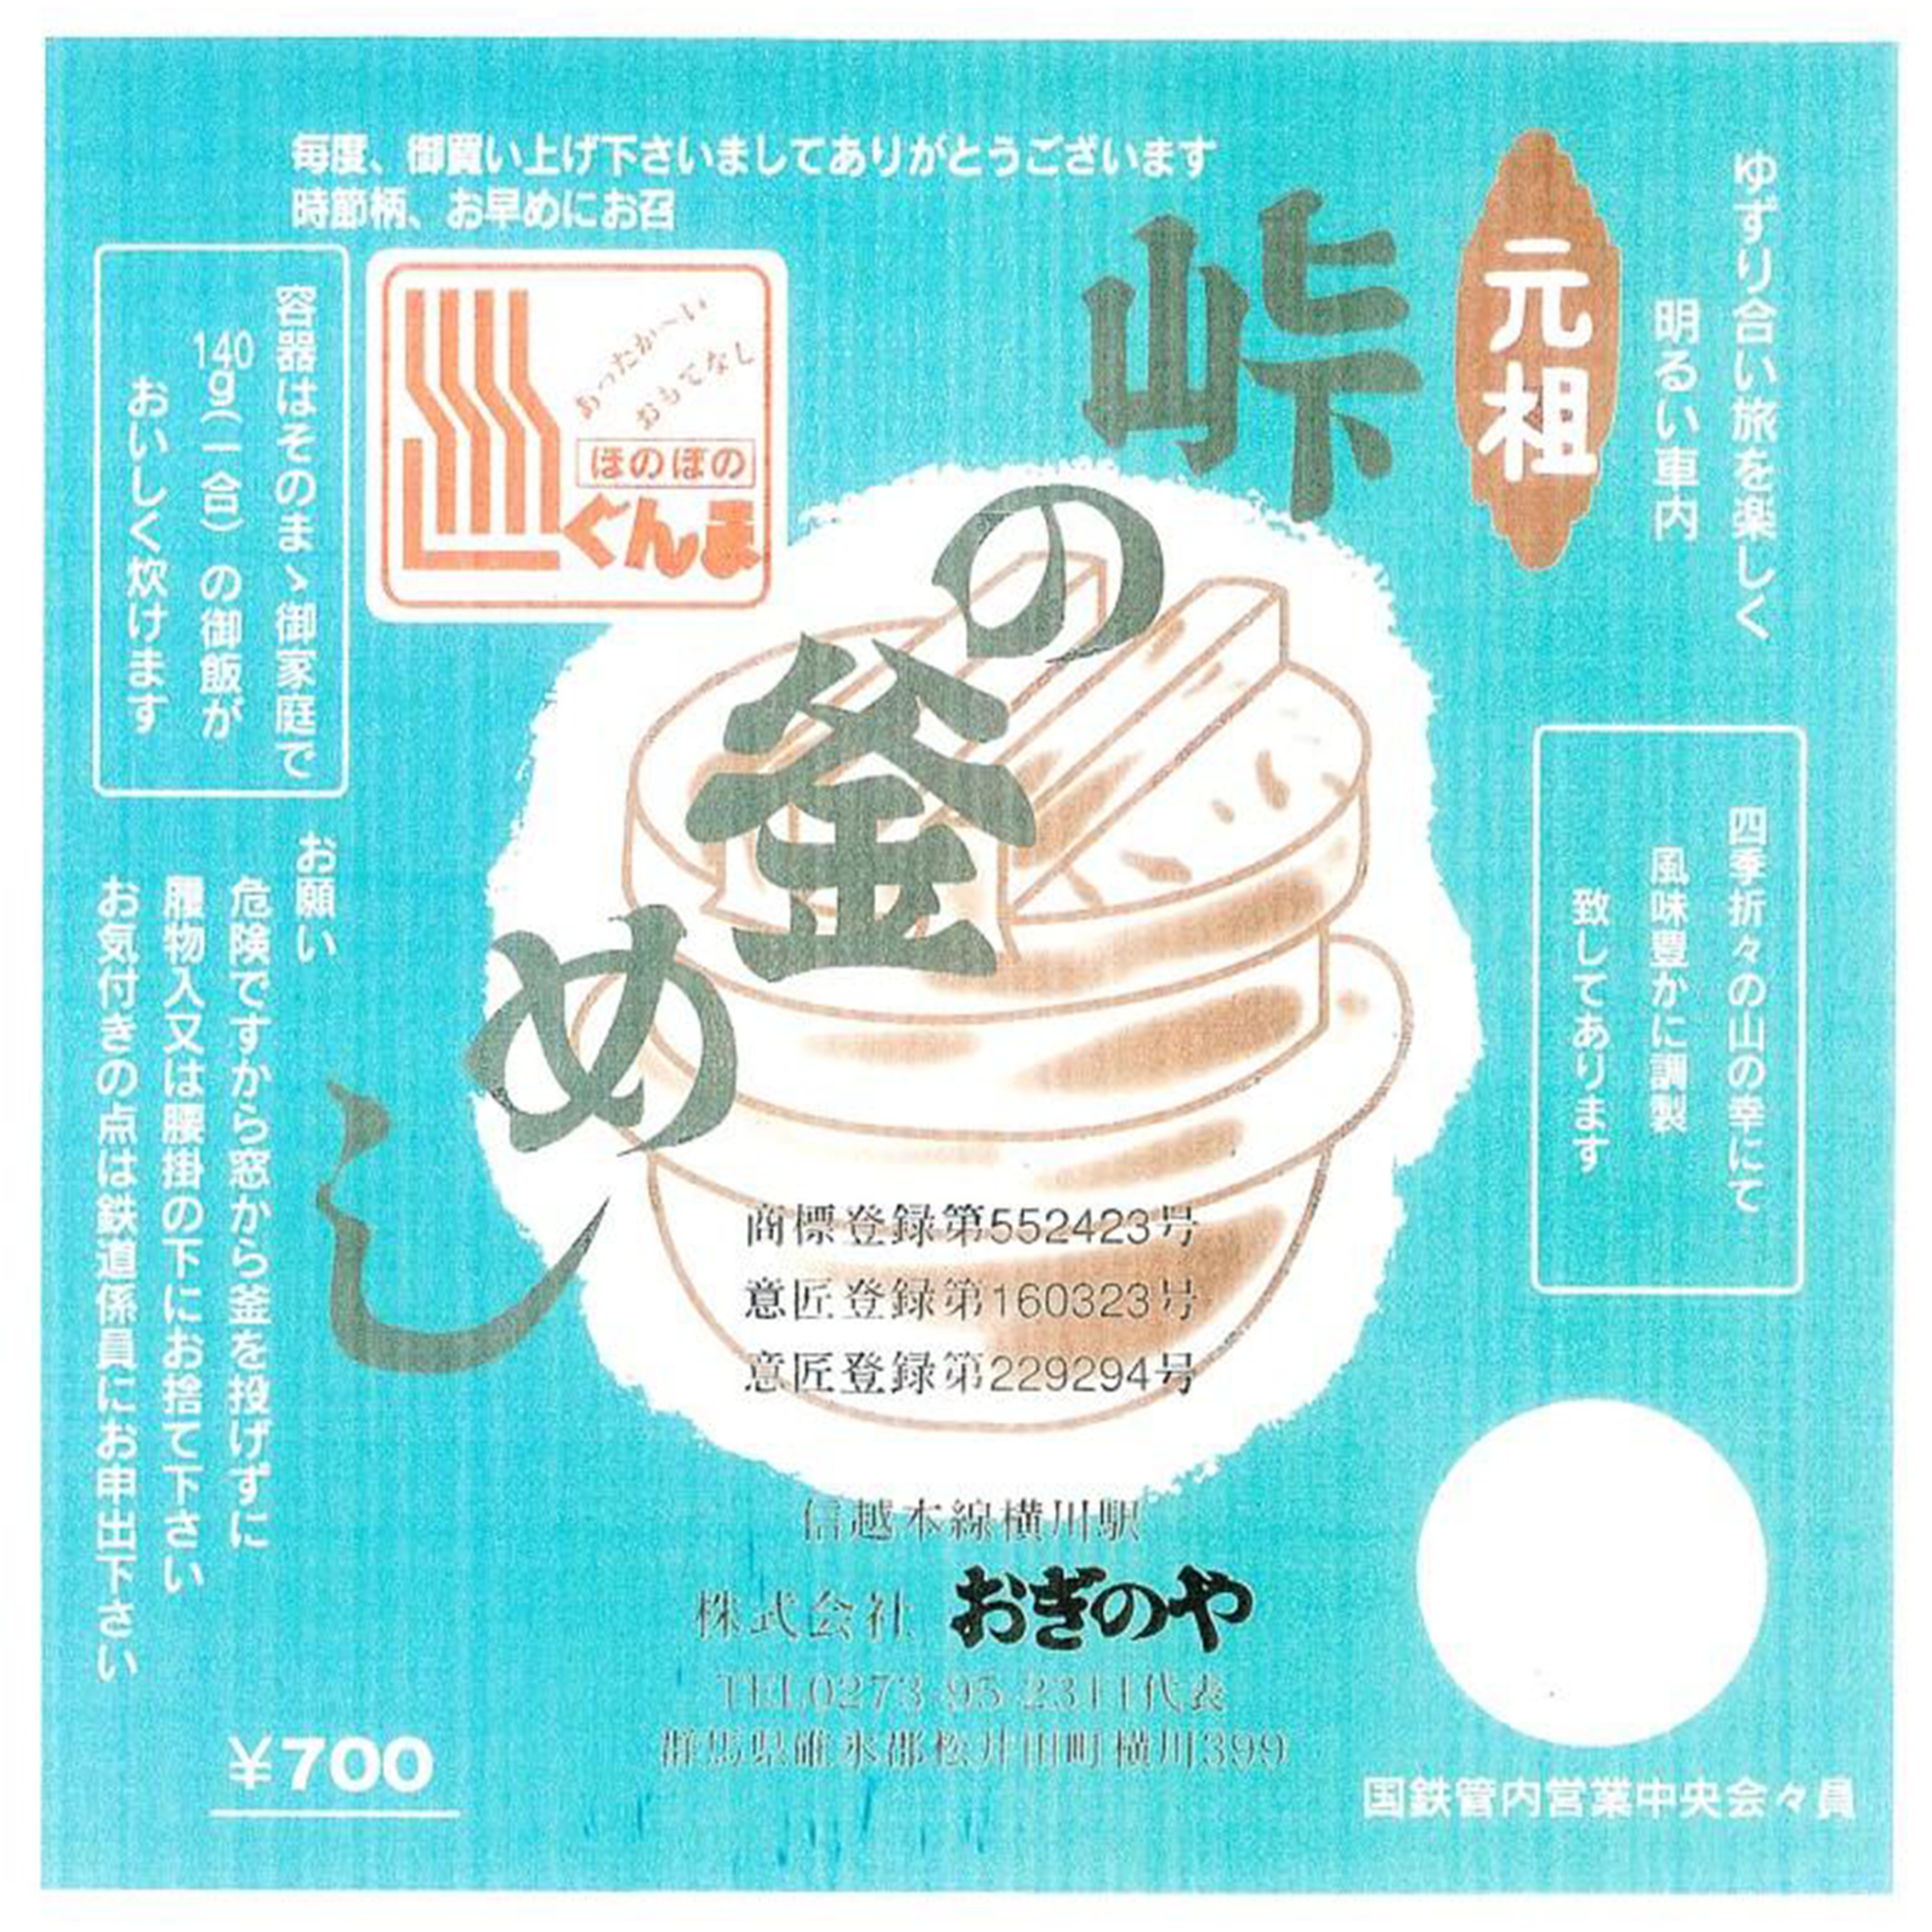 1981, 700 yen